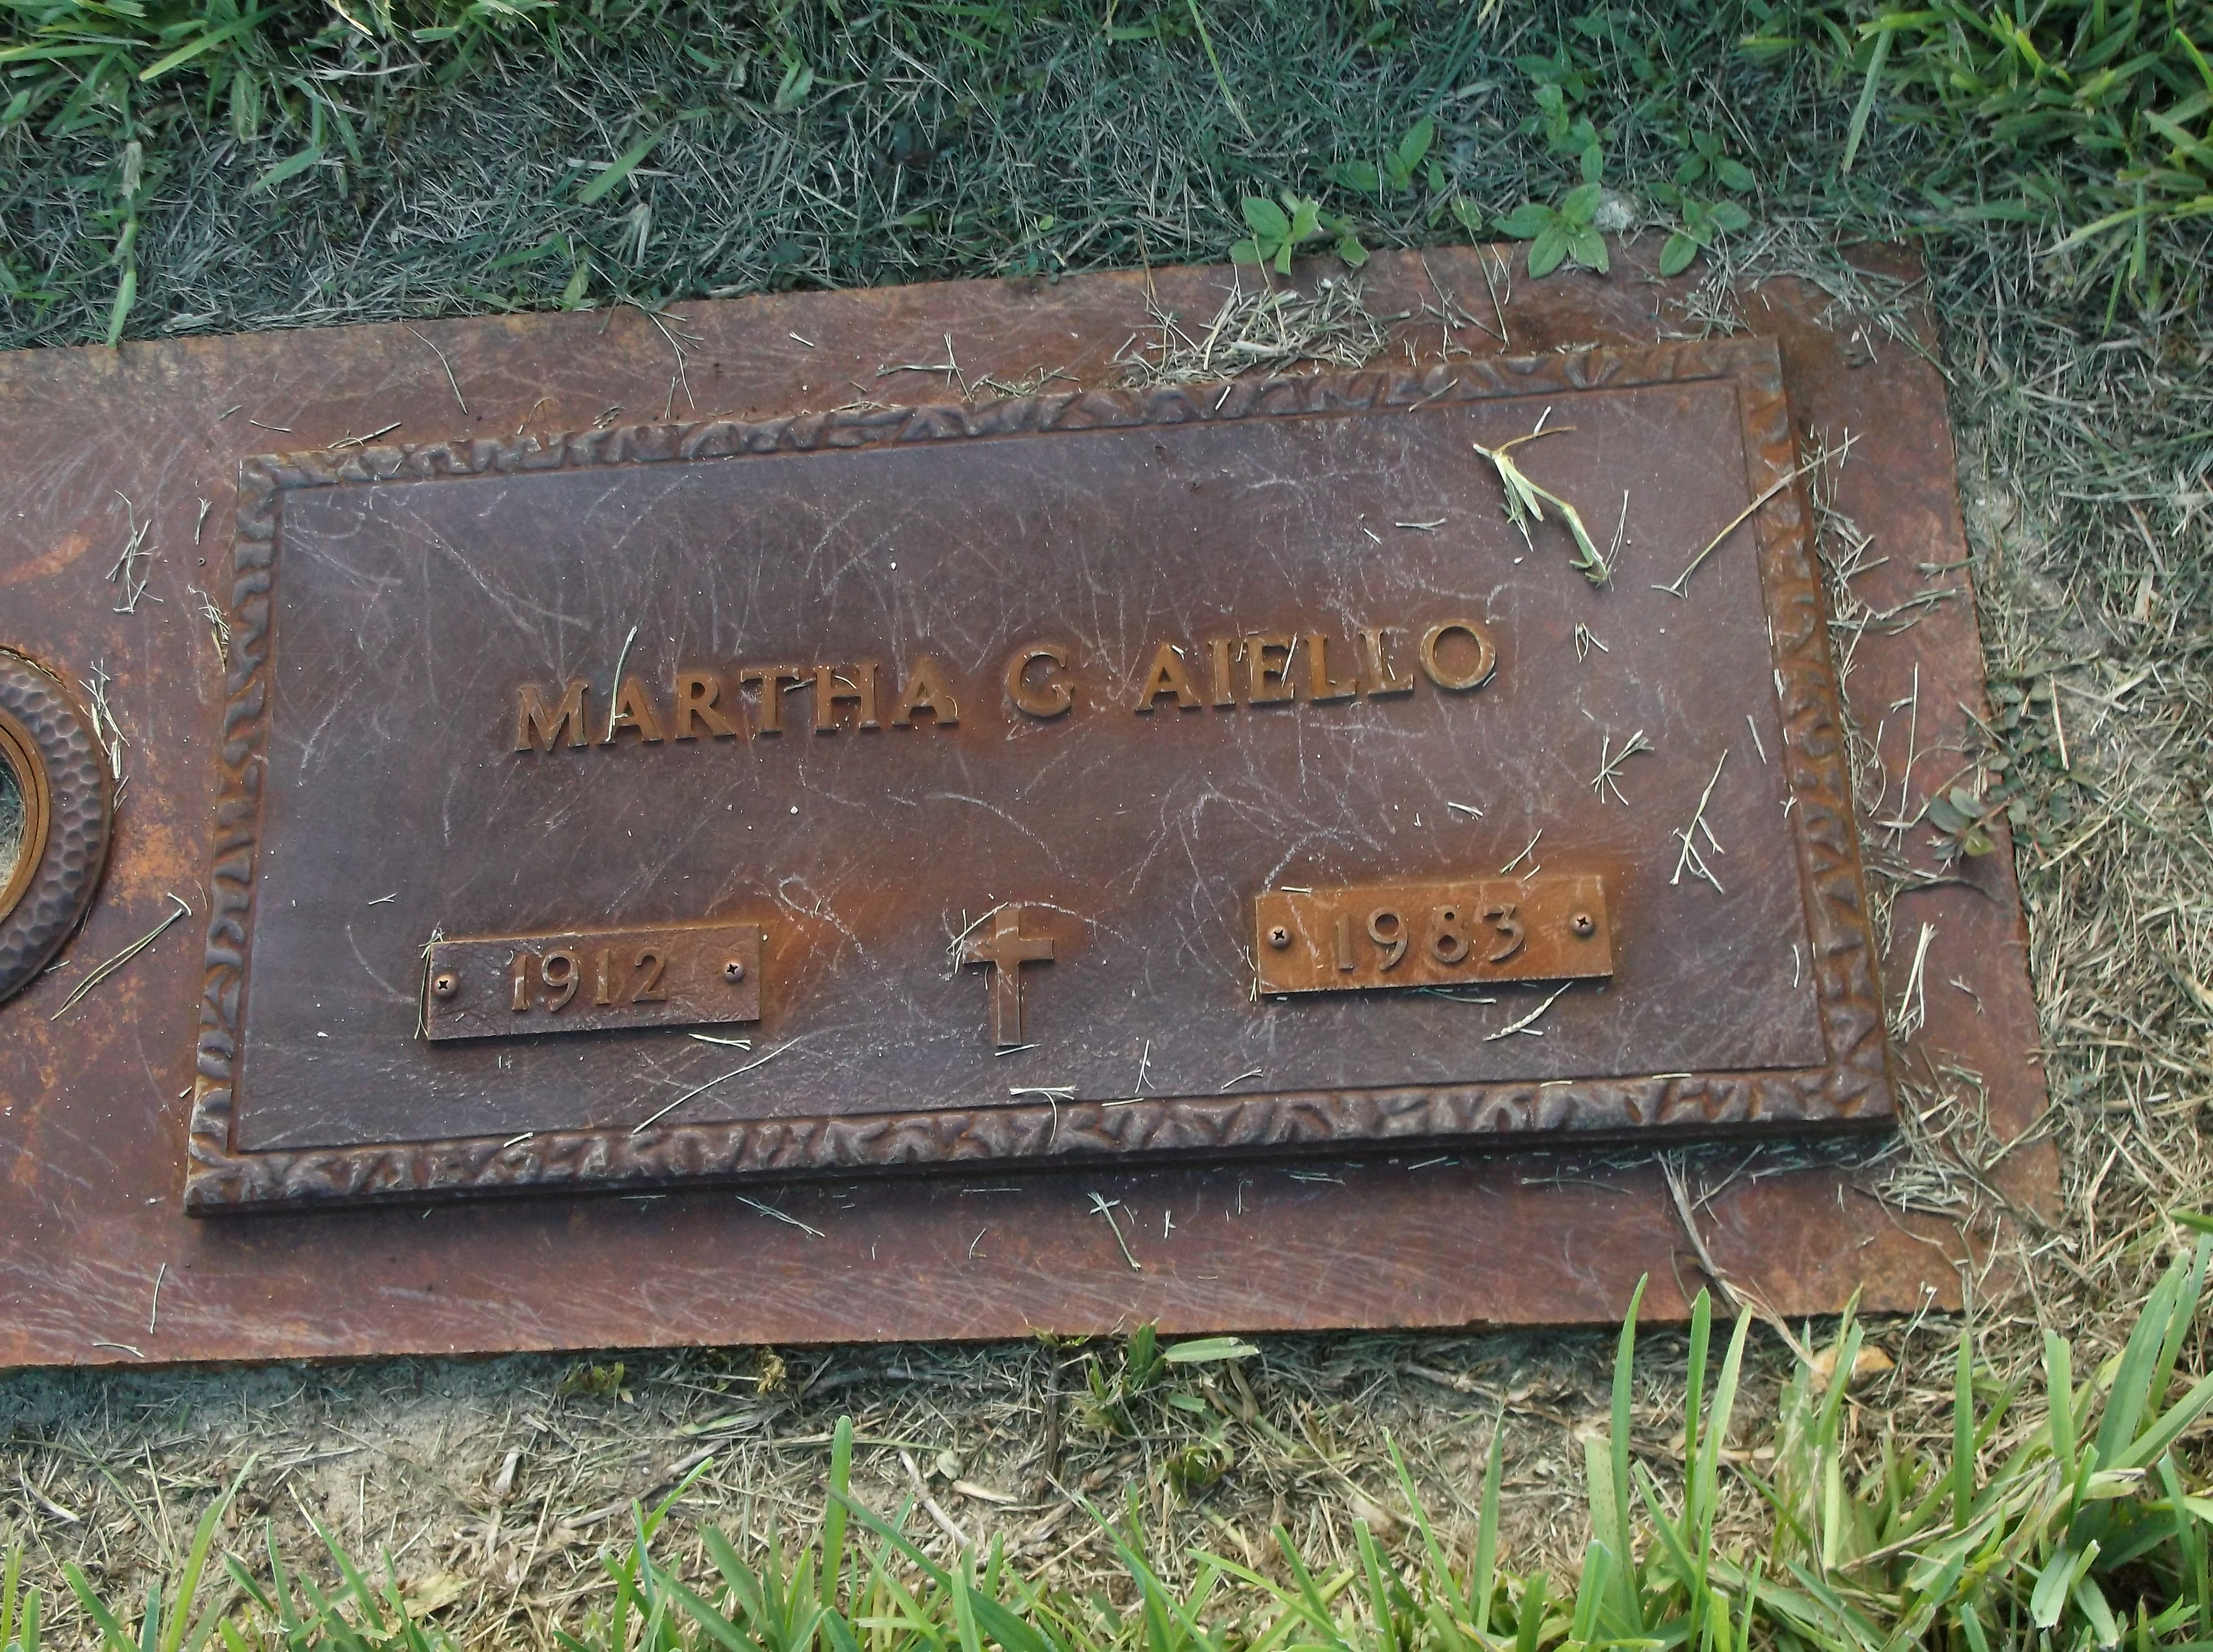 Martha G Aiello